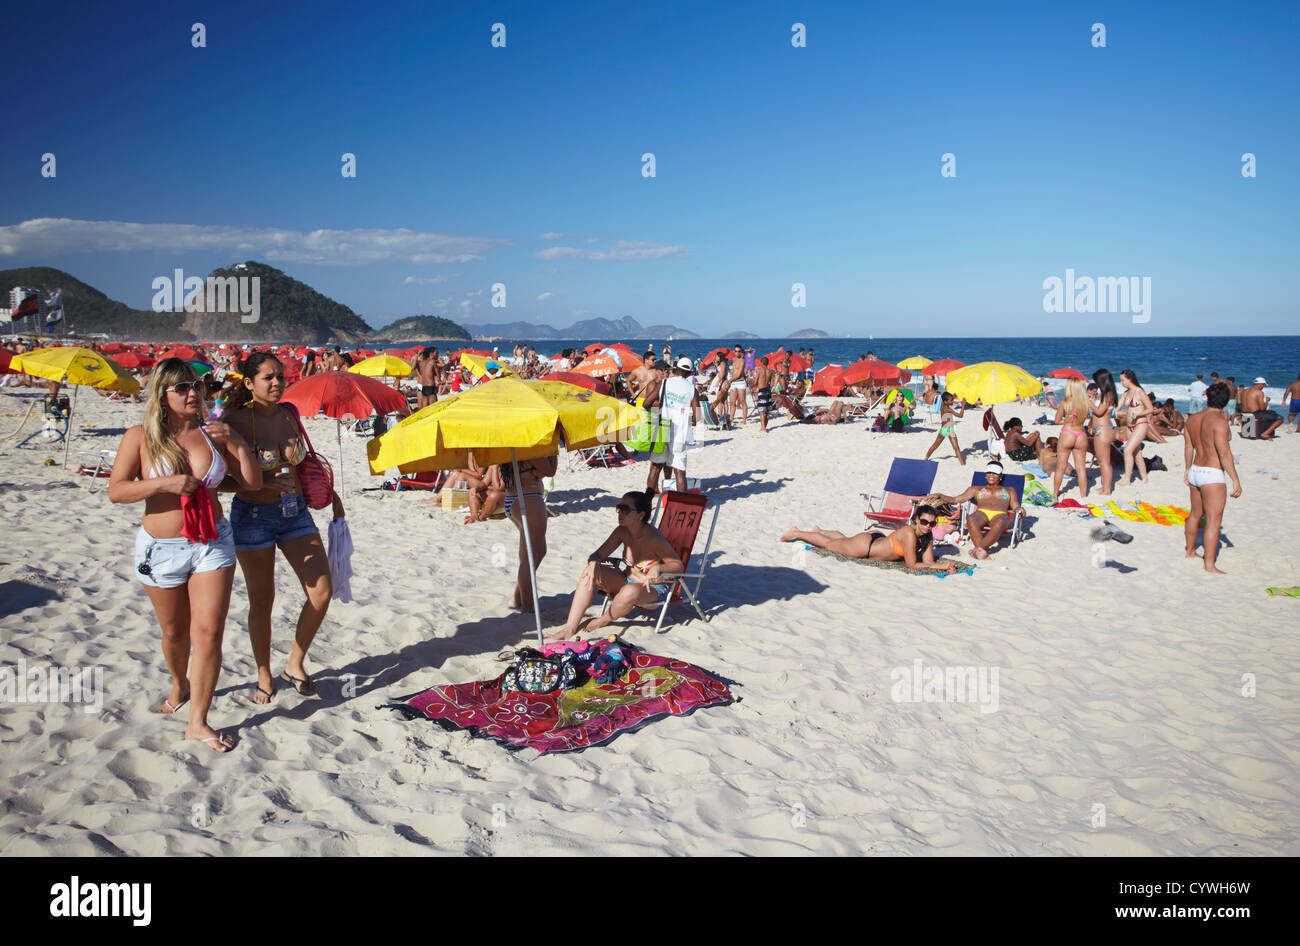 Copacabana beach, Rio de Janeiro, Brazil Stock Photo